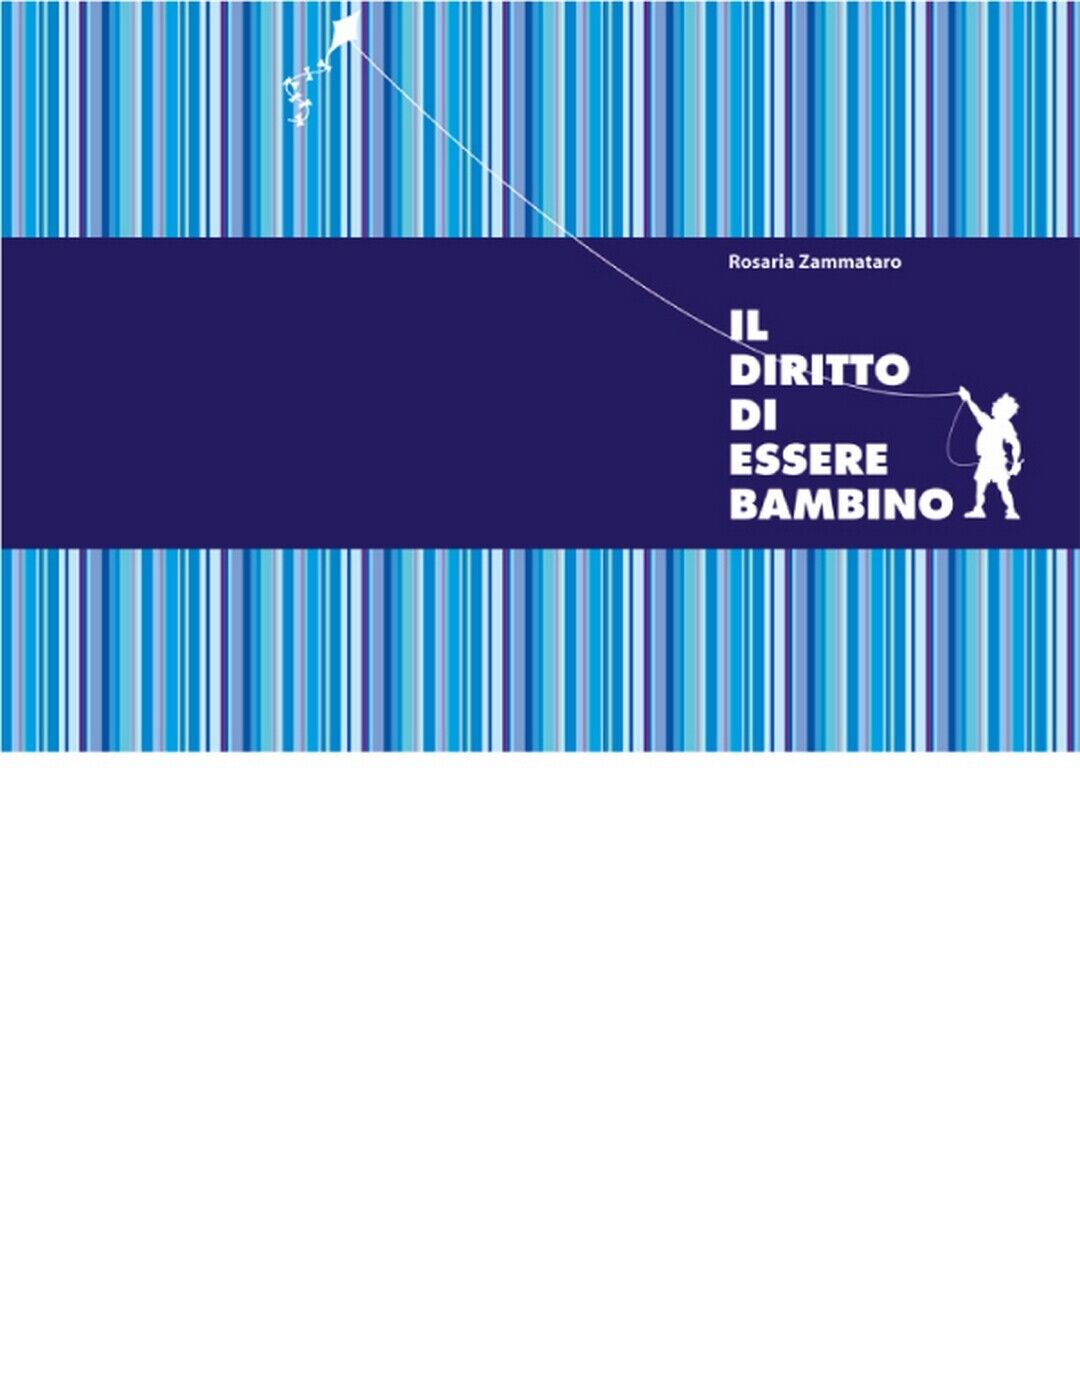 IL DIRITTO DI ESSERE BAMBINO  di Rosaria Zammataro,  2020,  Edizioni La Rocca